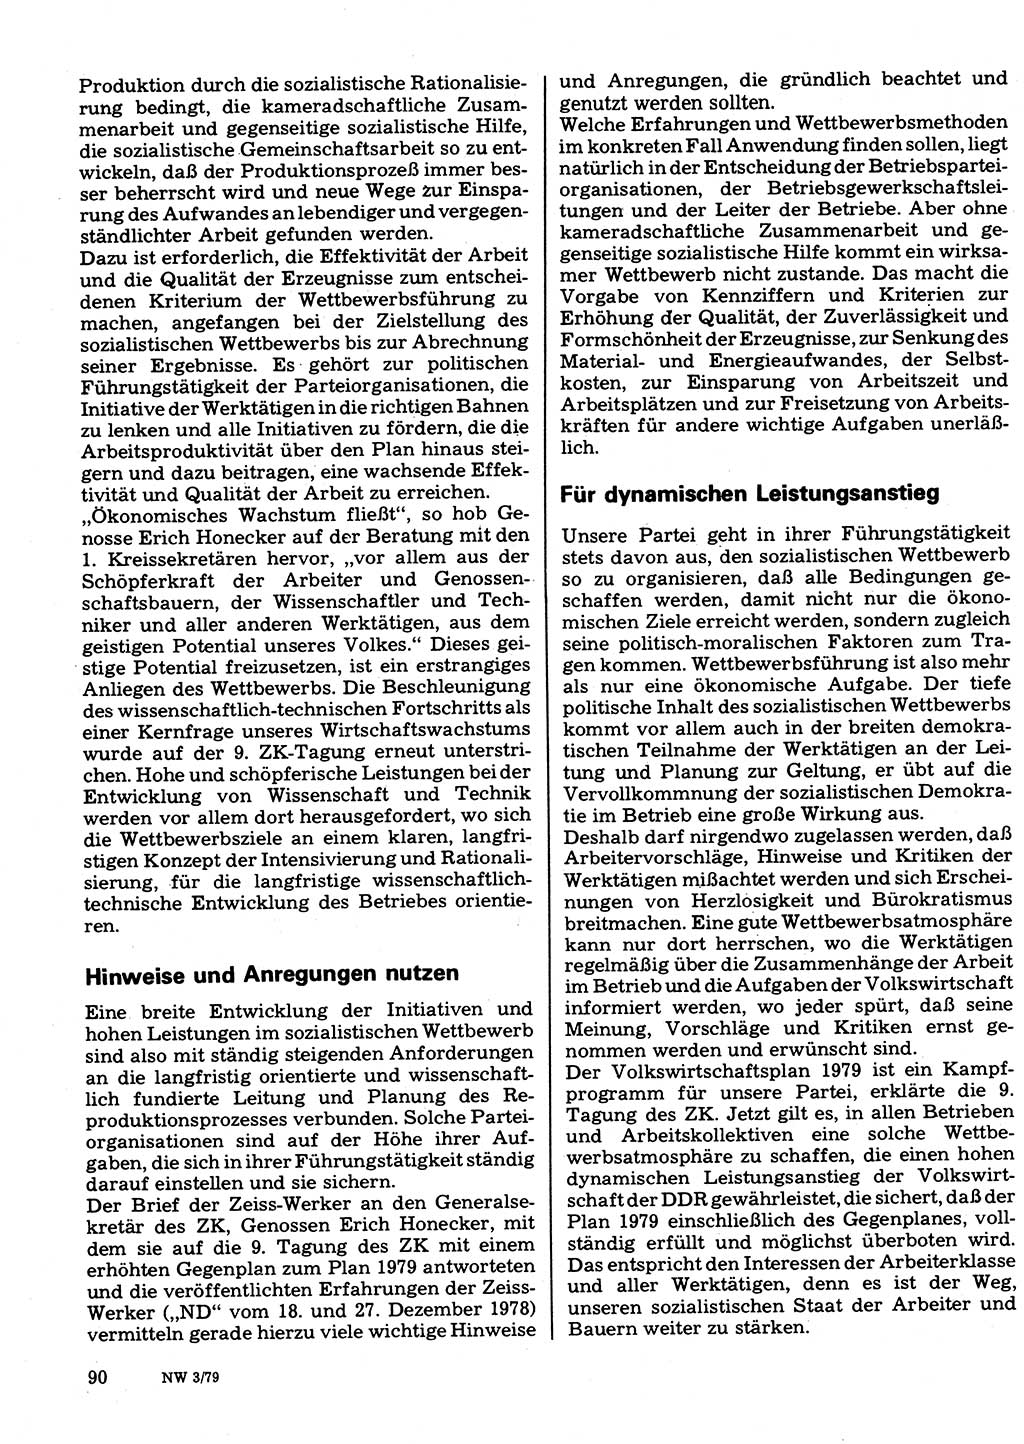 Neuer Weg (NW), Organ des Zentralkomitees (ZK) der SED (Sozialistische Einheitspartei Deutschlands) für Fragen des Parteilebens, 34. Jahrgang [Deutsche Demokratische Republik (DDR)] 1979, Seite 90 (NW ZK SED DDR 1979, S. 90)